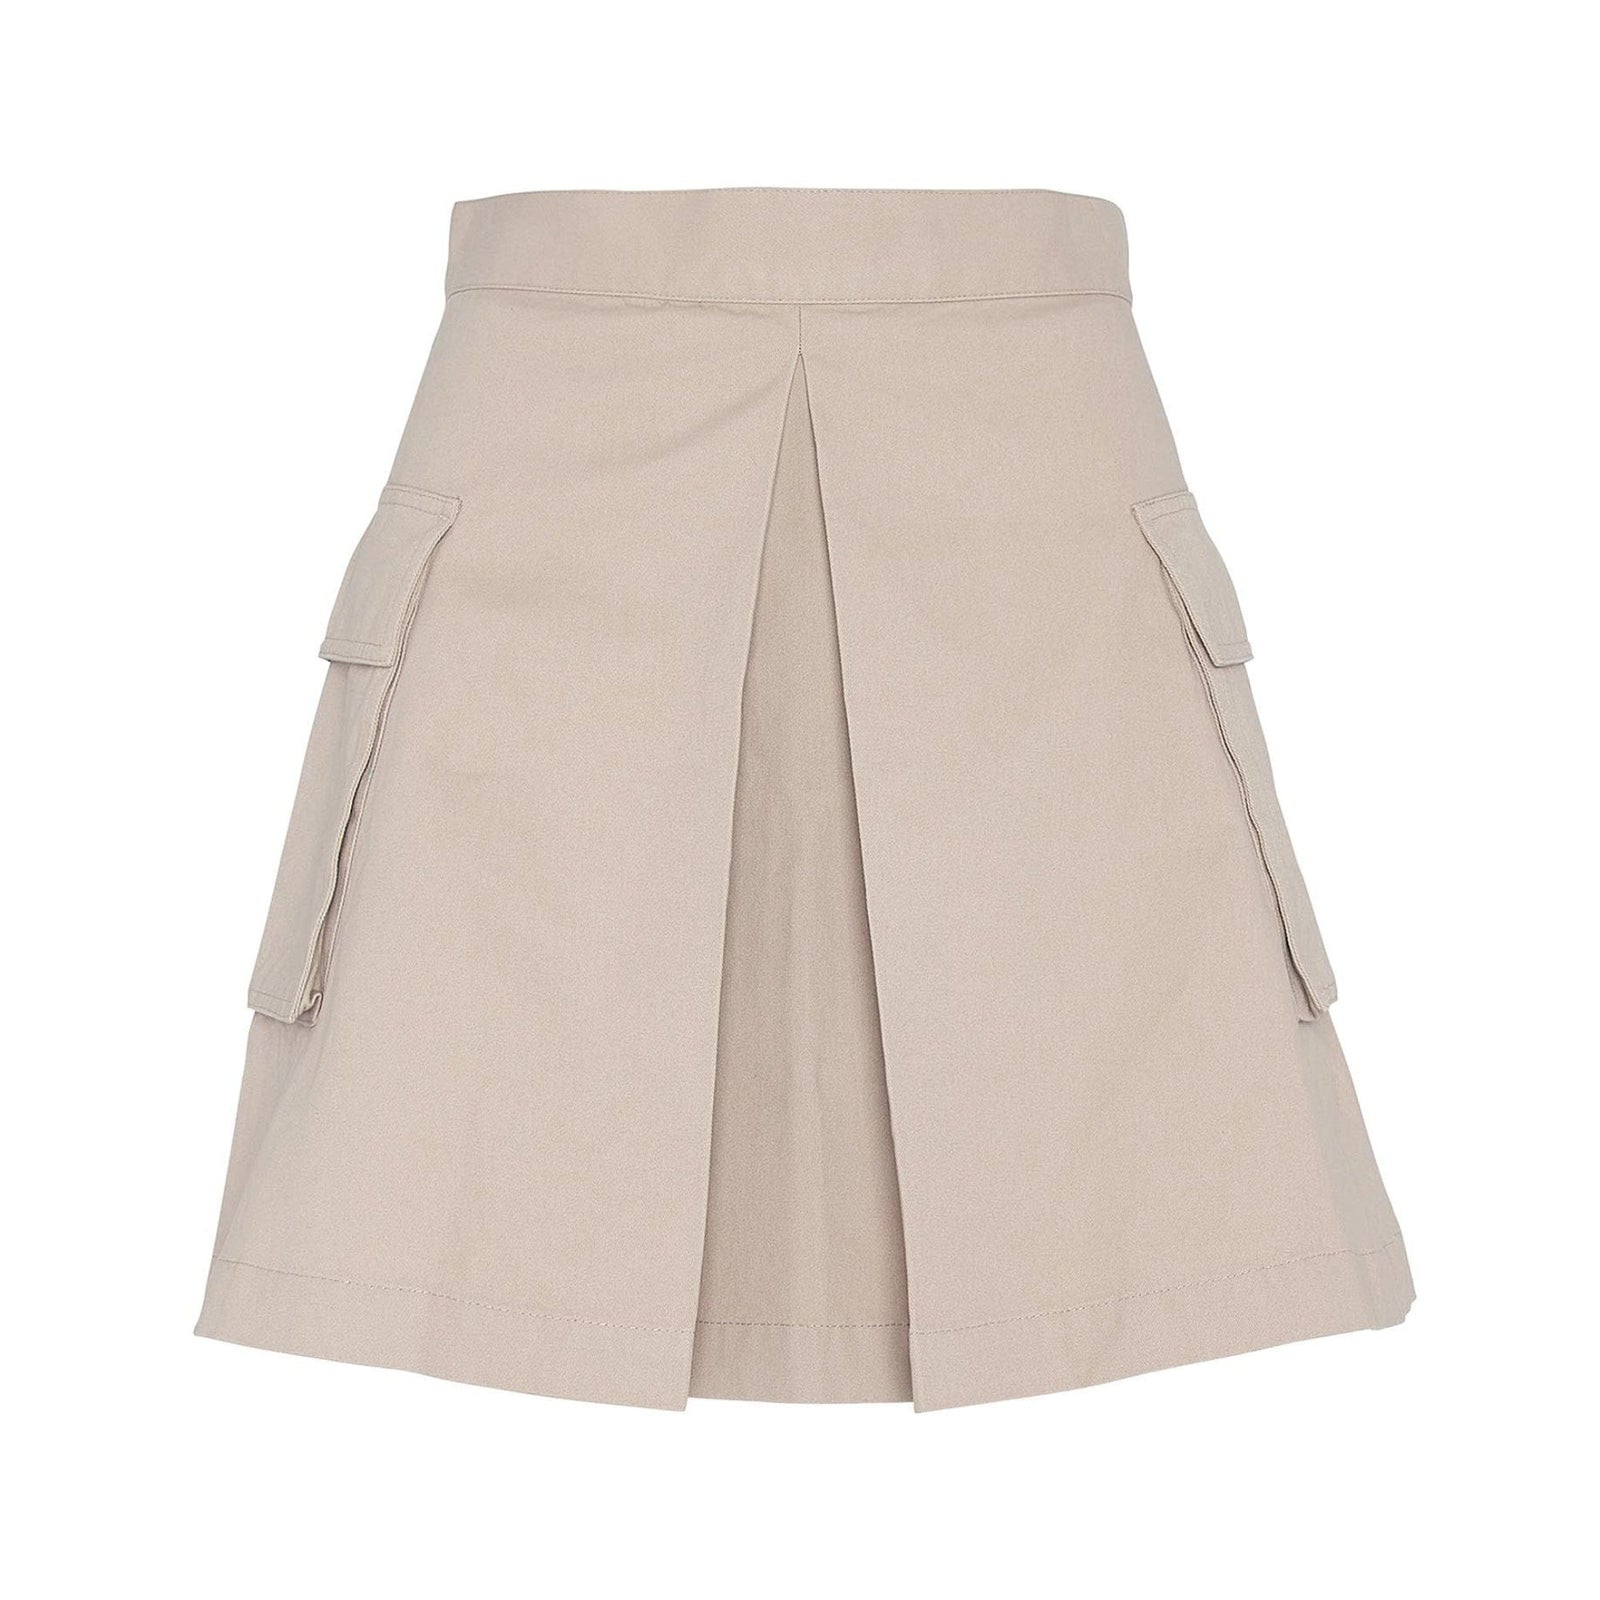 Barbour International Kinghorn Mini Skirt in Oat